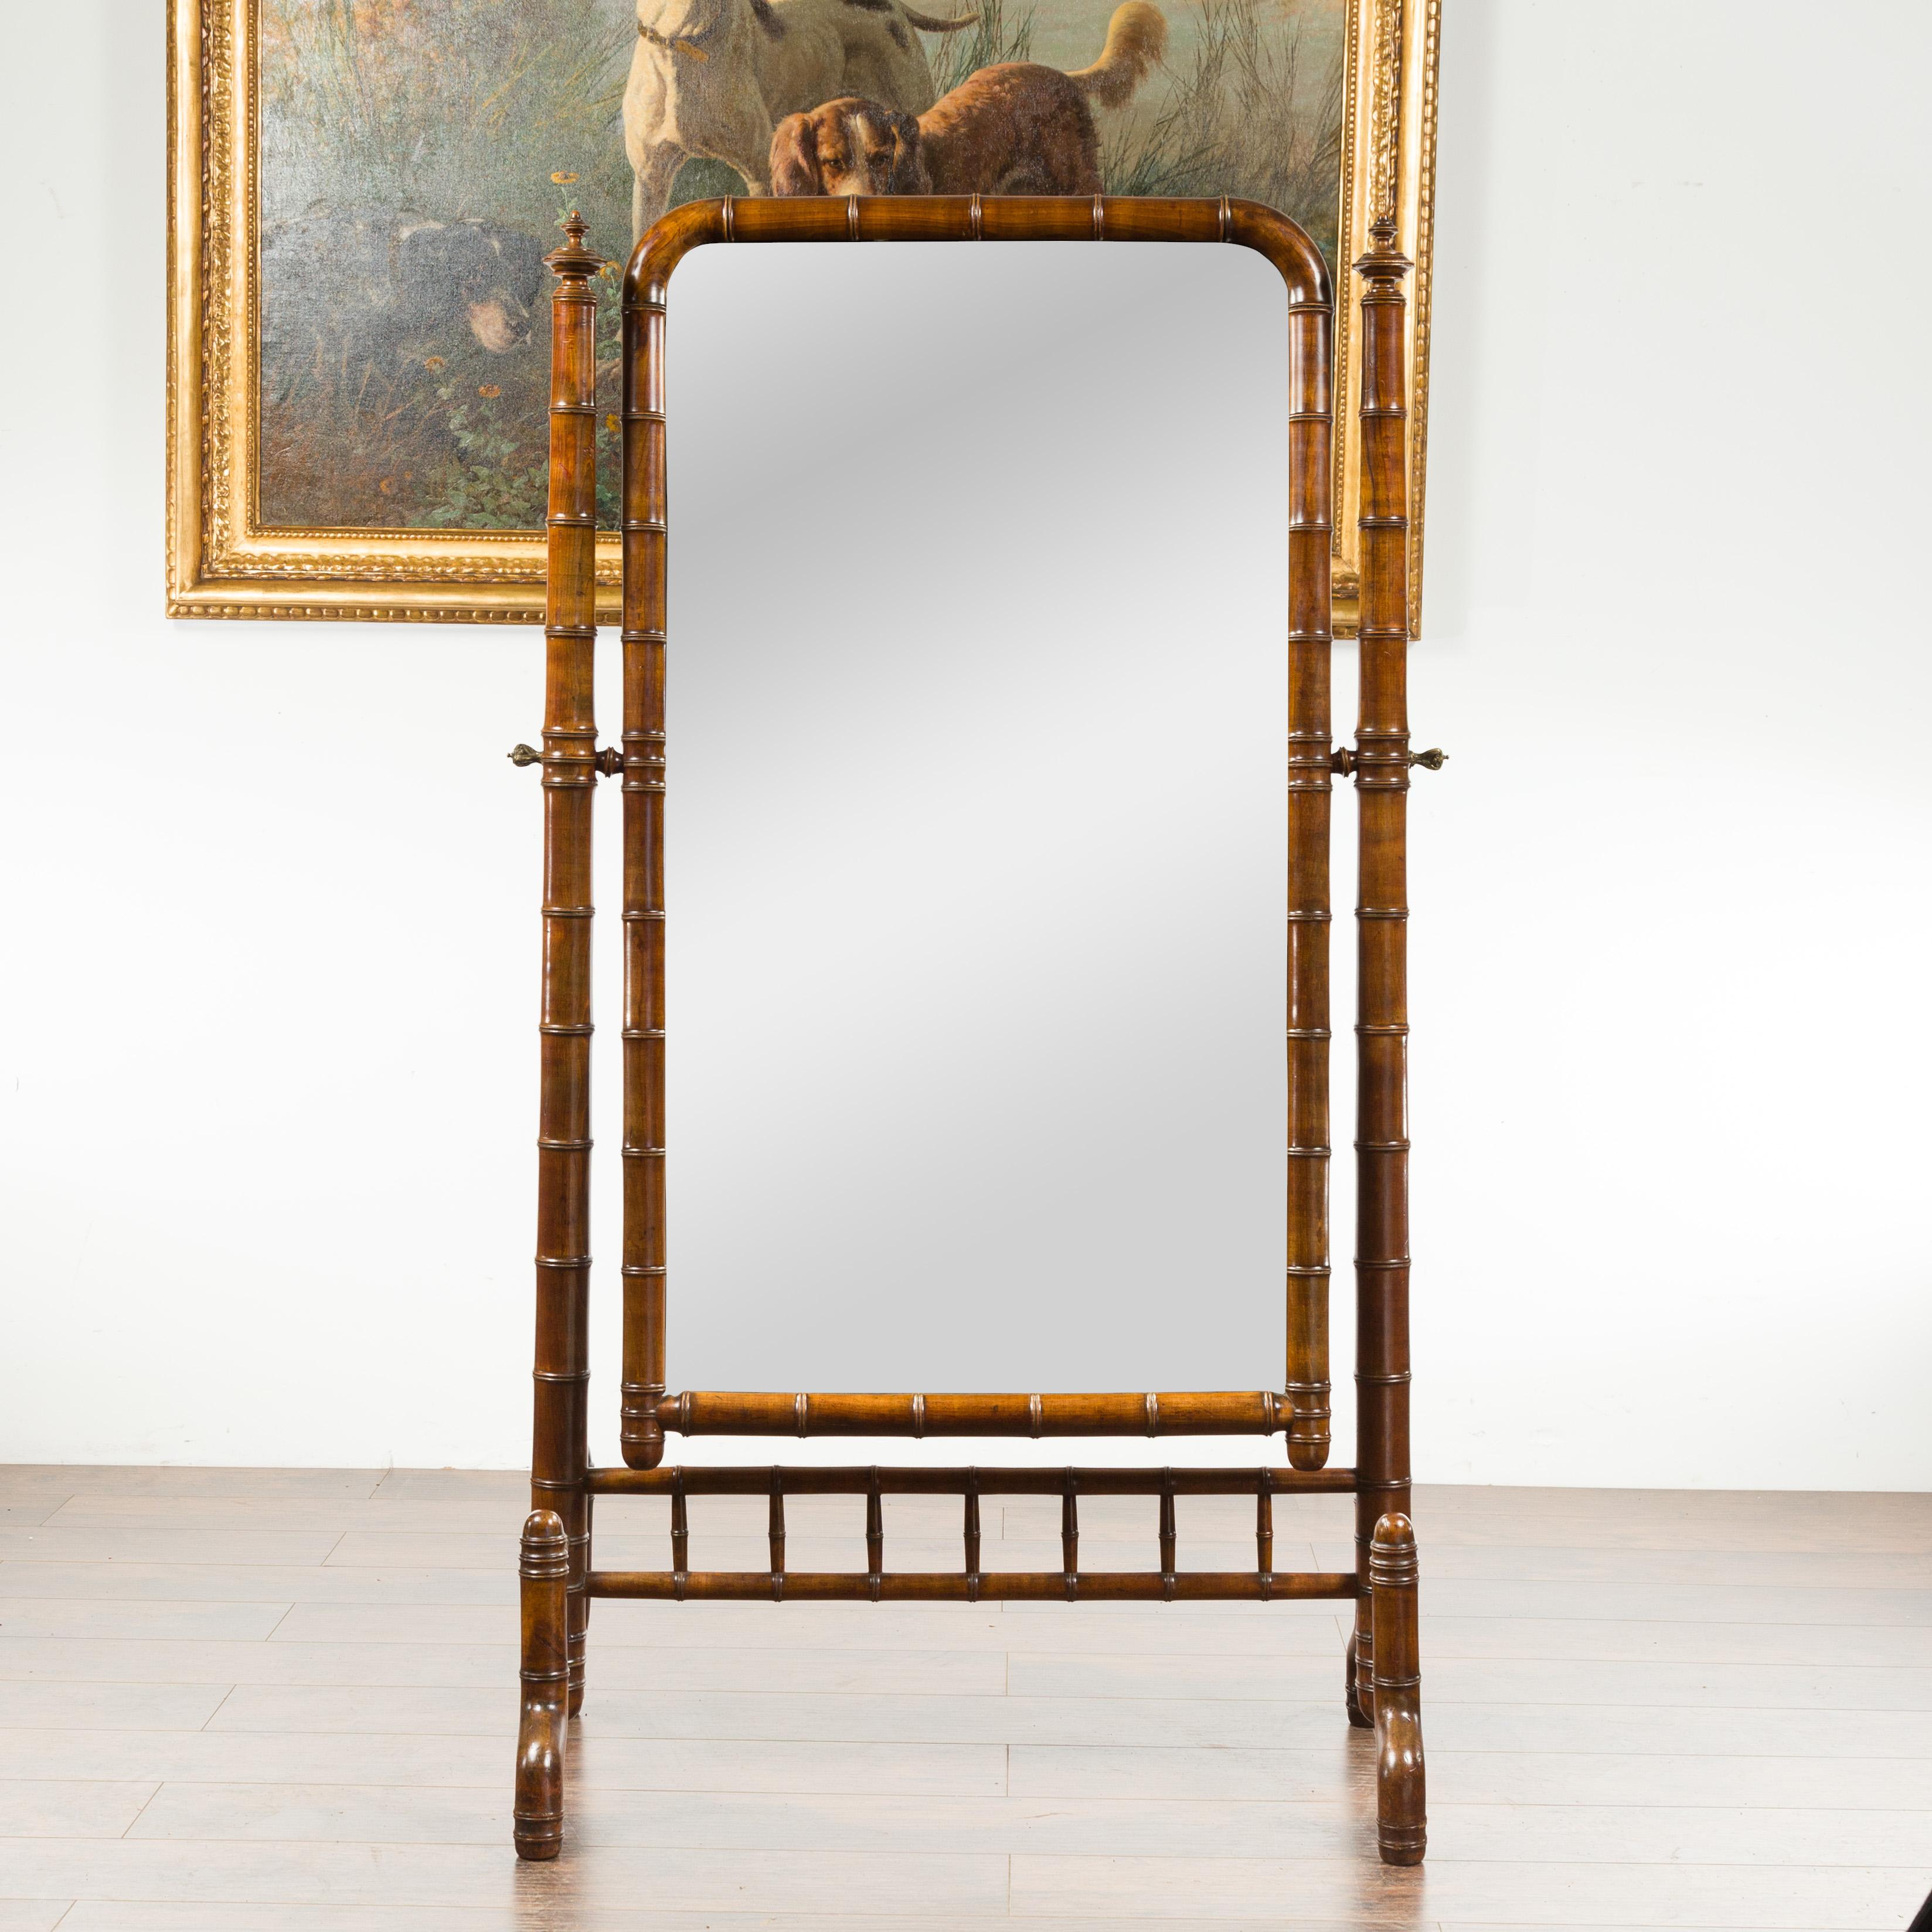 Miroir chevalier en noyer faux bambou de style Napoléon III, datant de la fin du XIXe siècle, avec fleurons tournés. Créé en France une décennie après la fin du règne de l'empereur Napoléon III, ce miroir cheval en noyer présente un cadre en faux